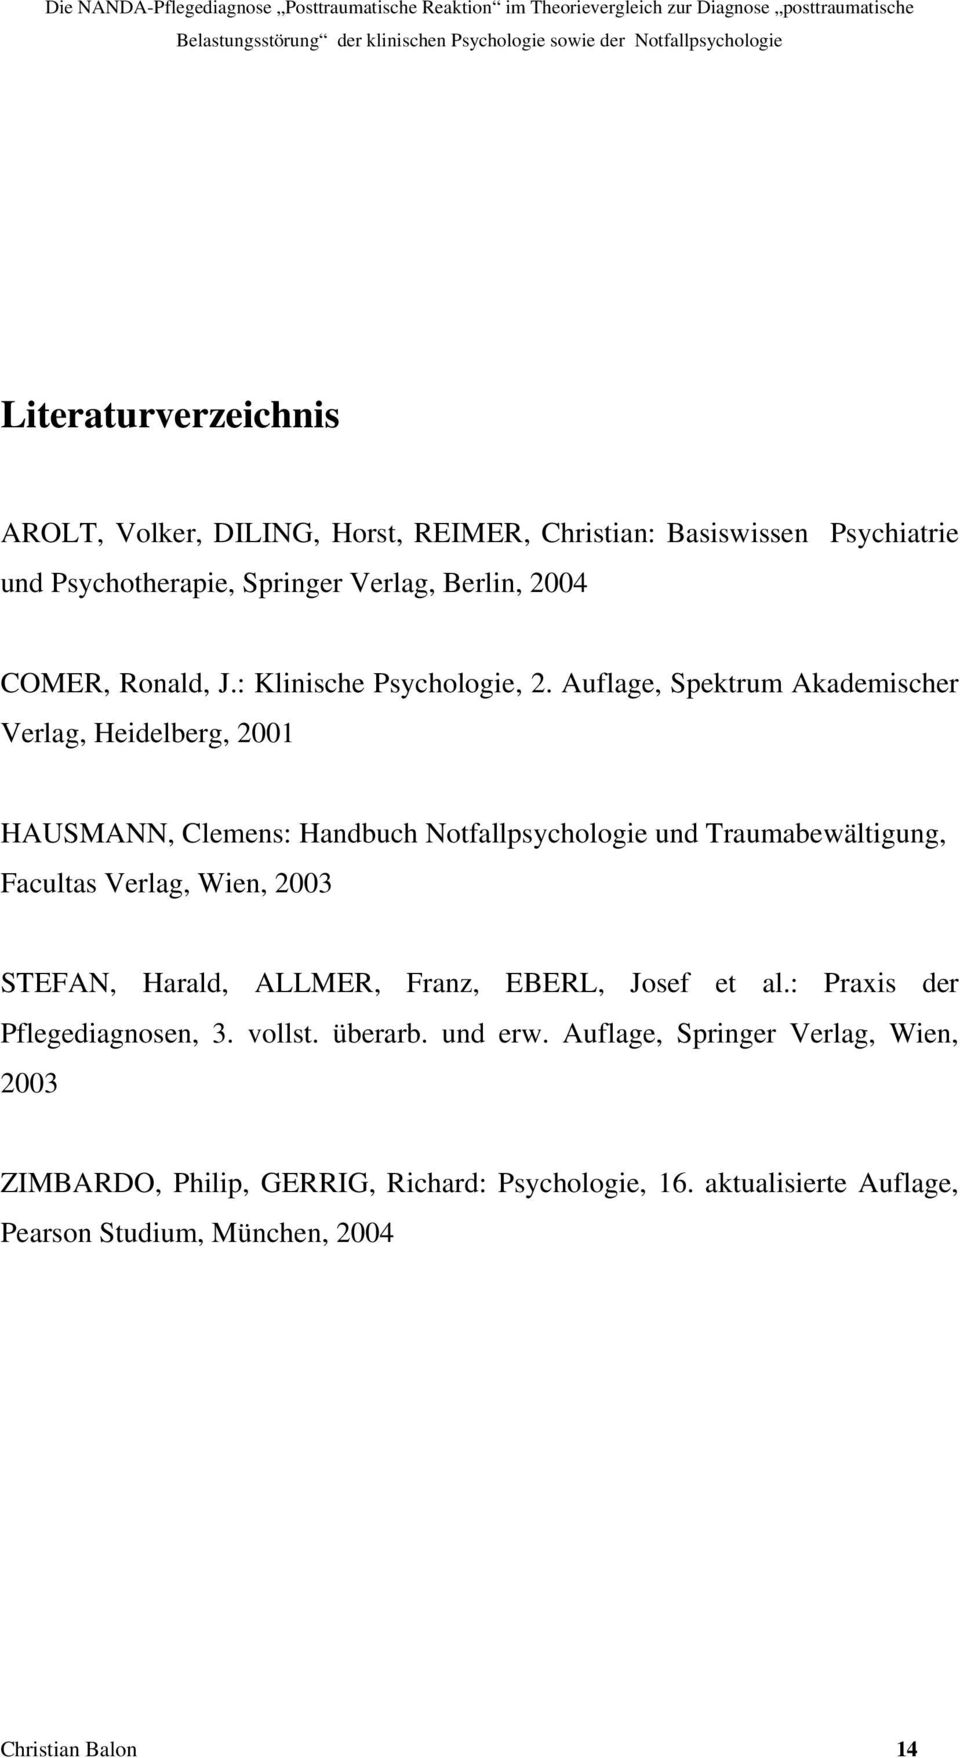 Auflage, Spektrum Akademischer Verlag, Heidelberg, 2001 HAUSMANN, Clemens: Handbuch Notfallpsychologie und Traumabewältigung, Facultas Verlag, Wien, 2003